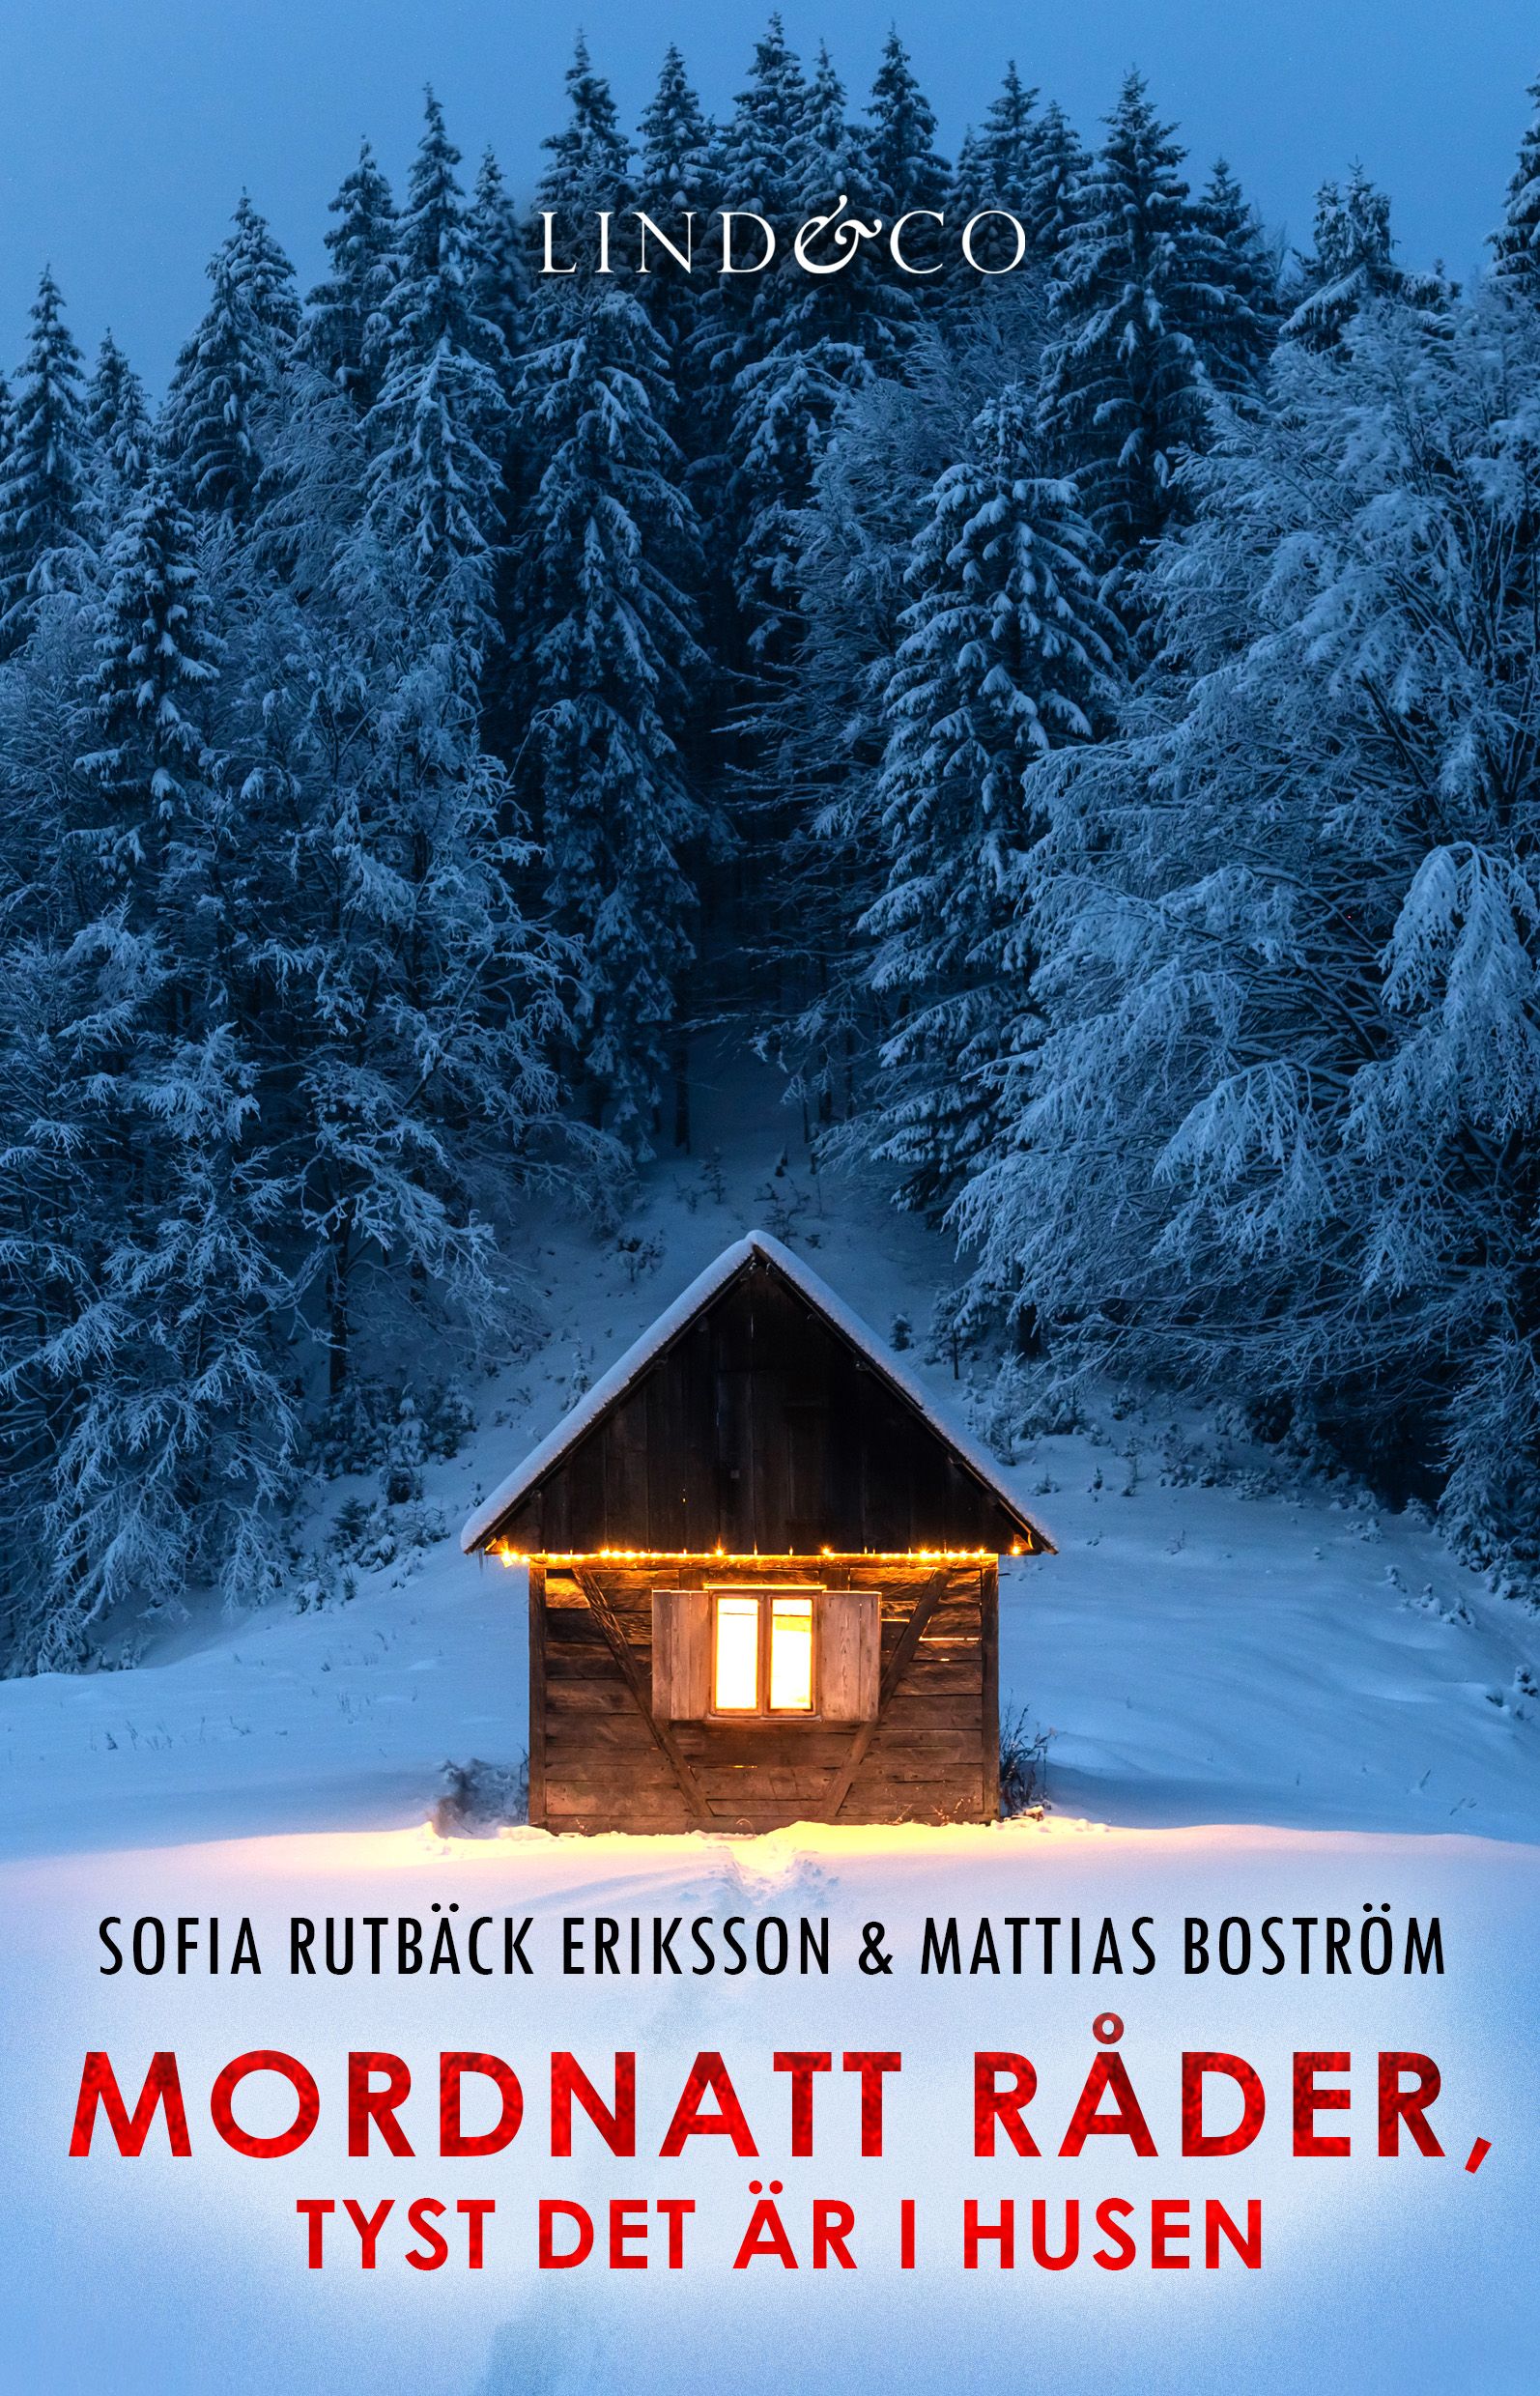 Mordnatt råder, tyst det är i husen (HELA ROMANEN), e-bok av Mattias Boström, Sofia Rutbäck Eriksson